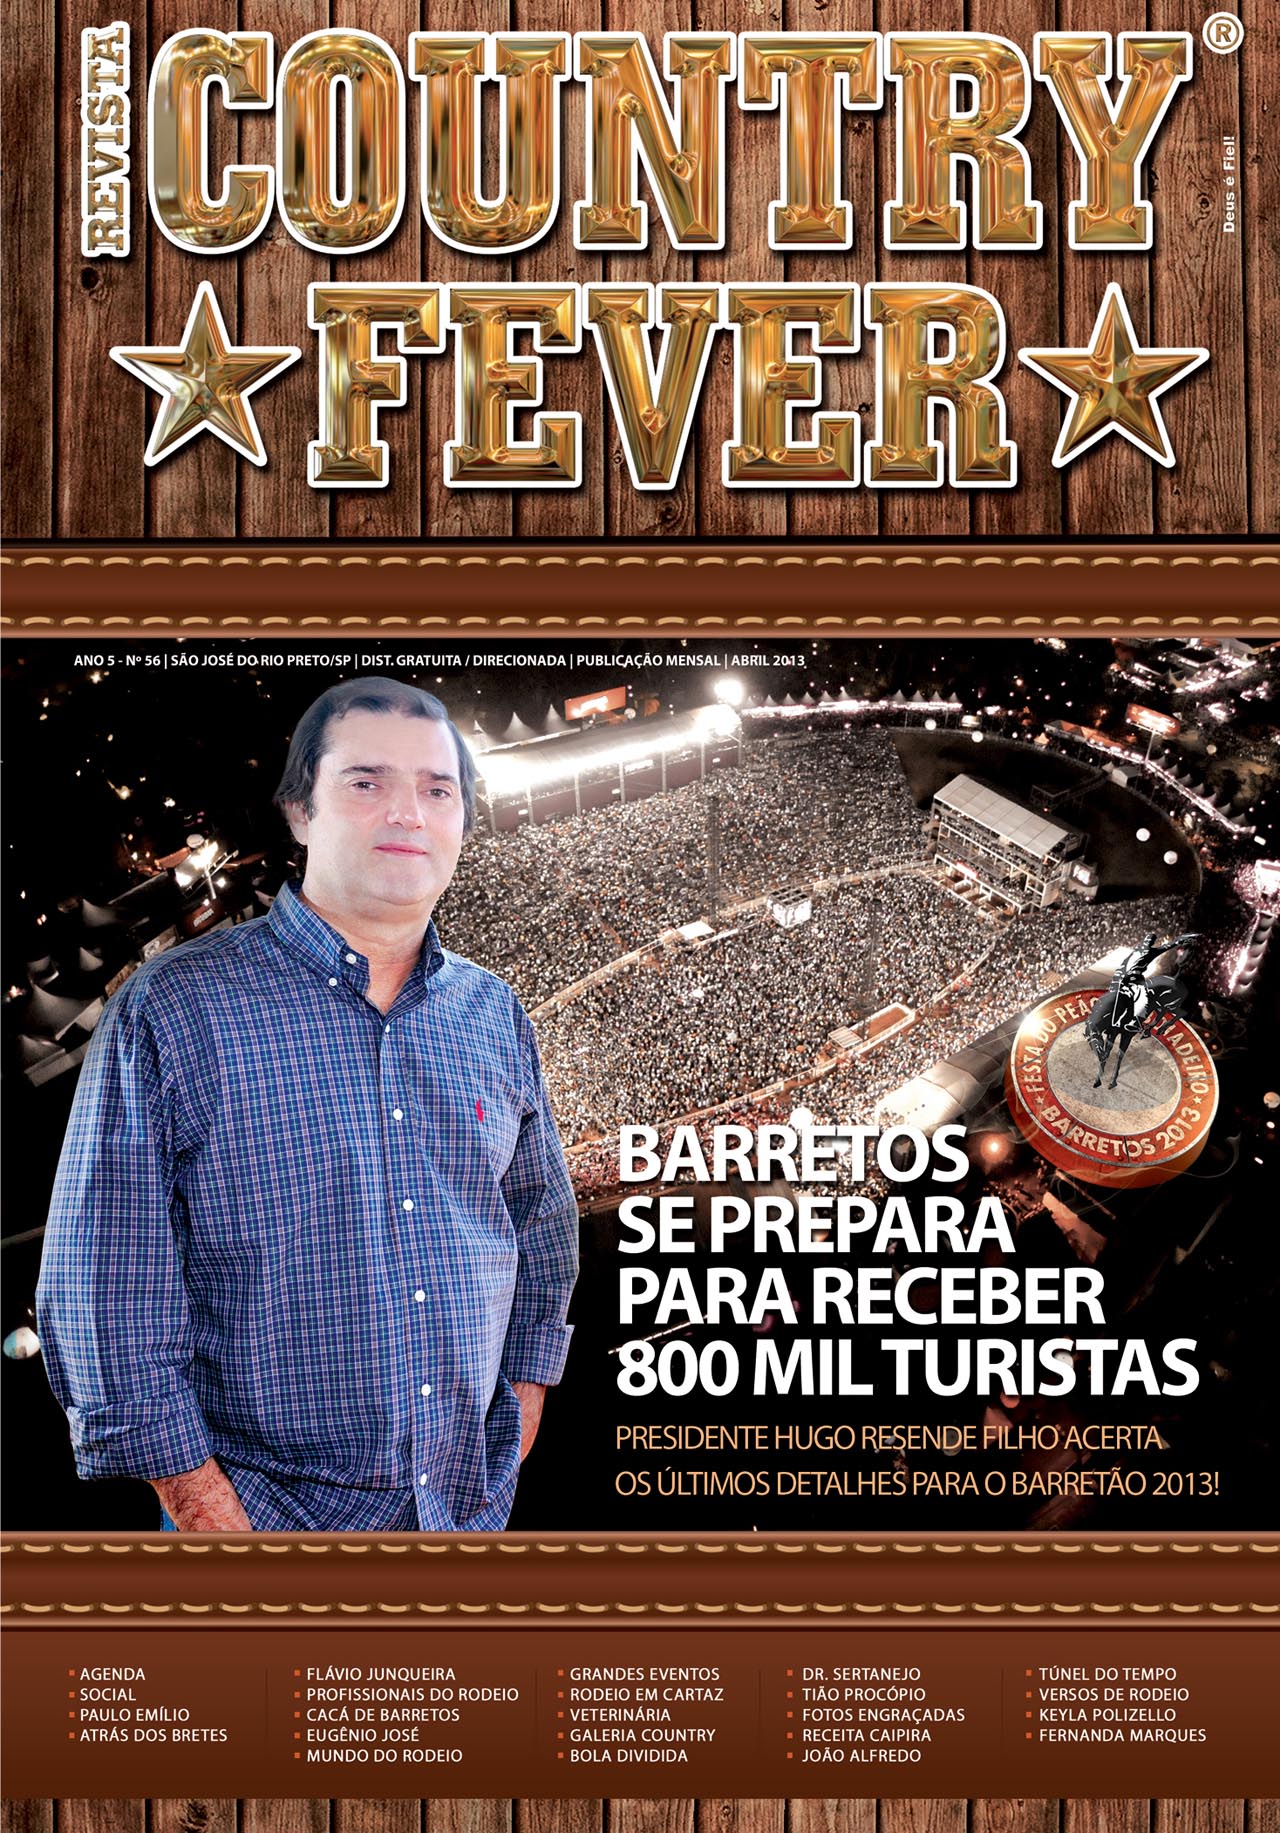 Revista Country Fever - Edição de Abril de 2013